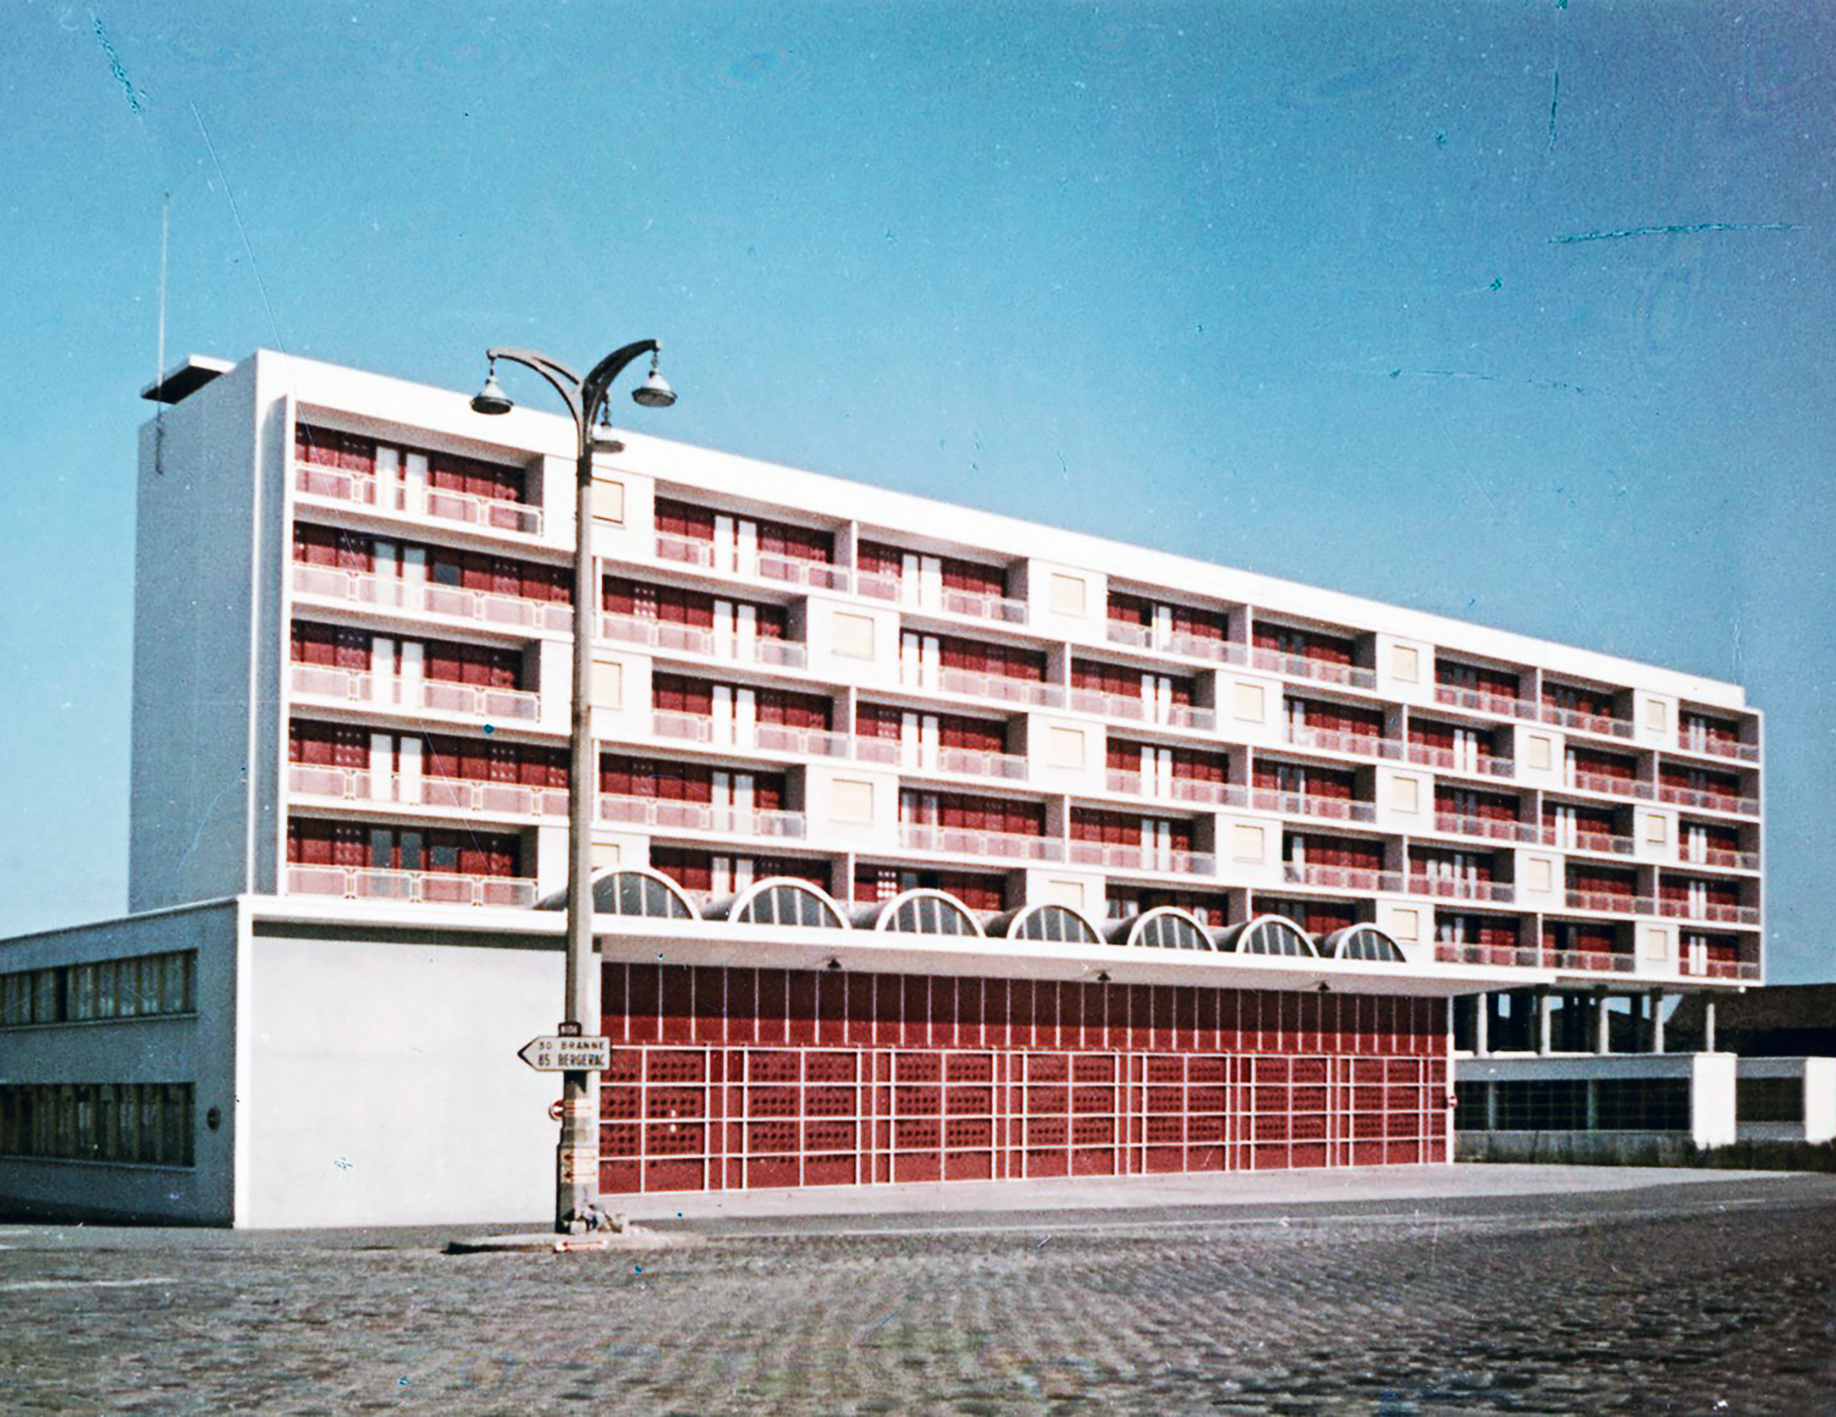 Façades, caserne des pompiers de la Benauge, Bordeaux, 1952-1953 (Cl. Ferret, arch.).